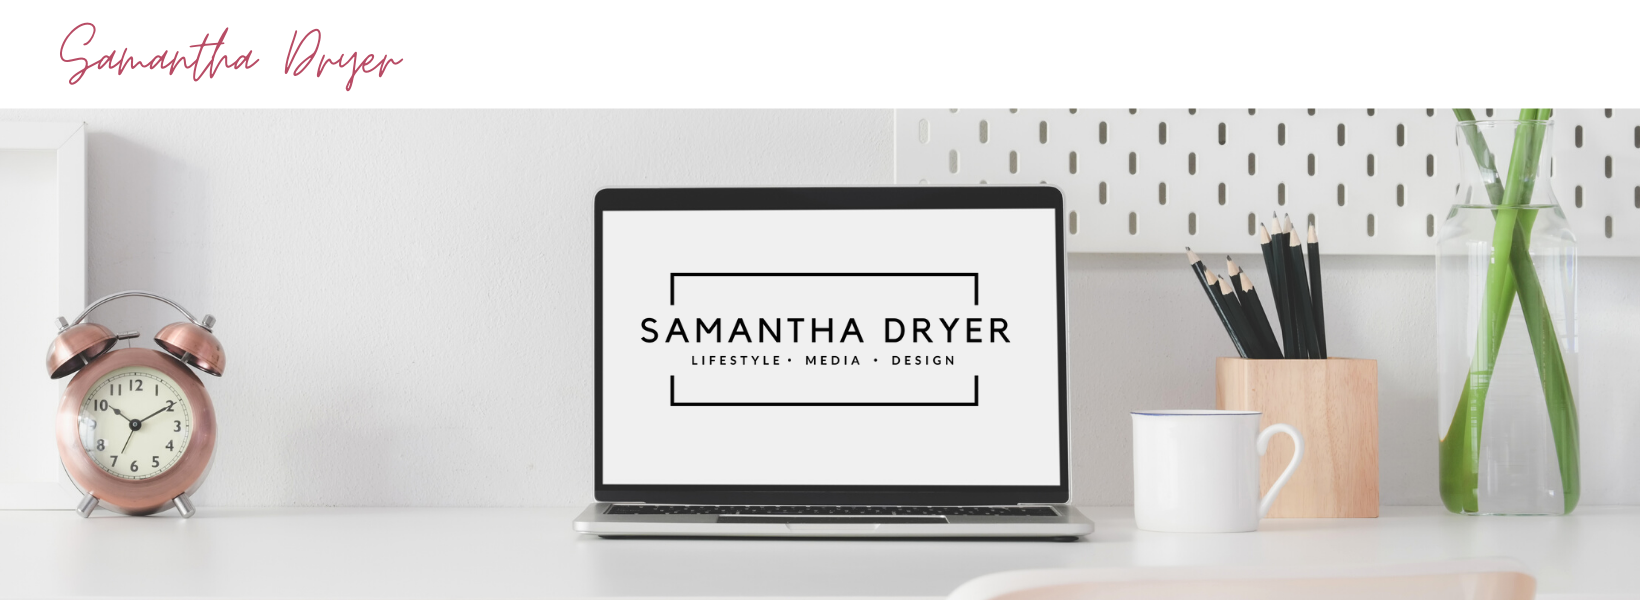 Samantha Dryer Media